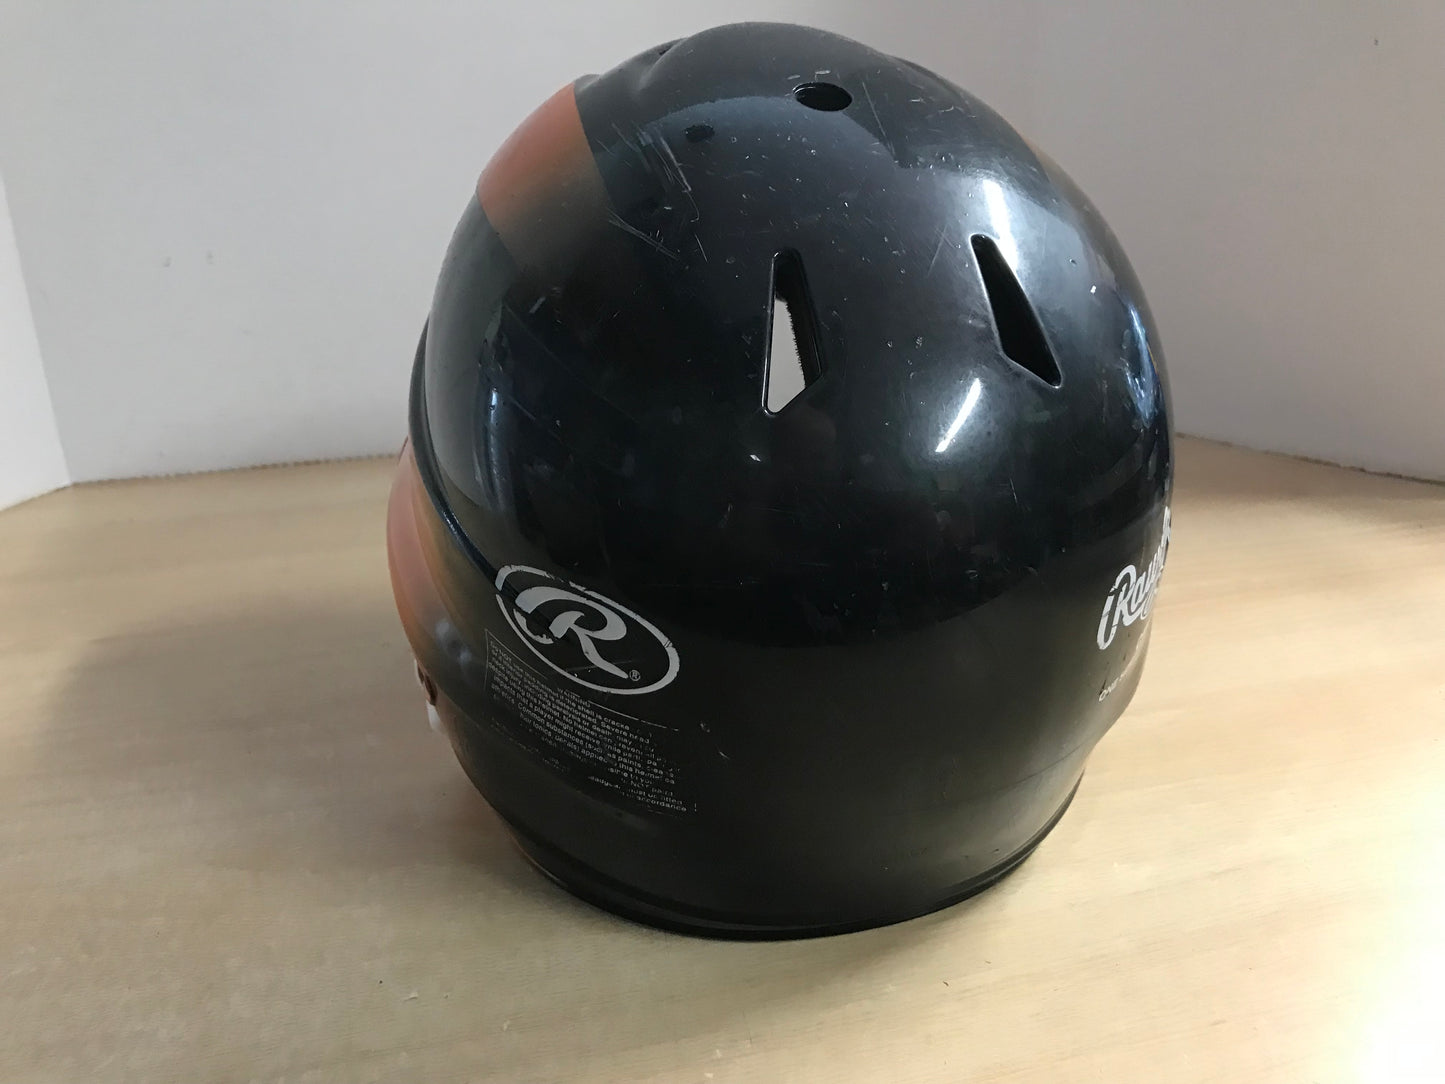 Baseball Helmet Child Size 6.5-7.5  Youth Rawling Black Orange